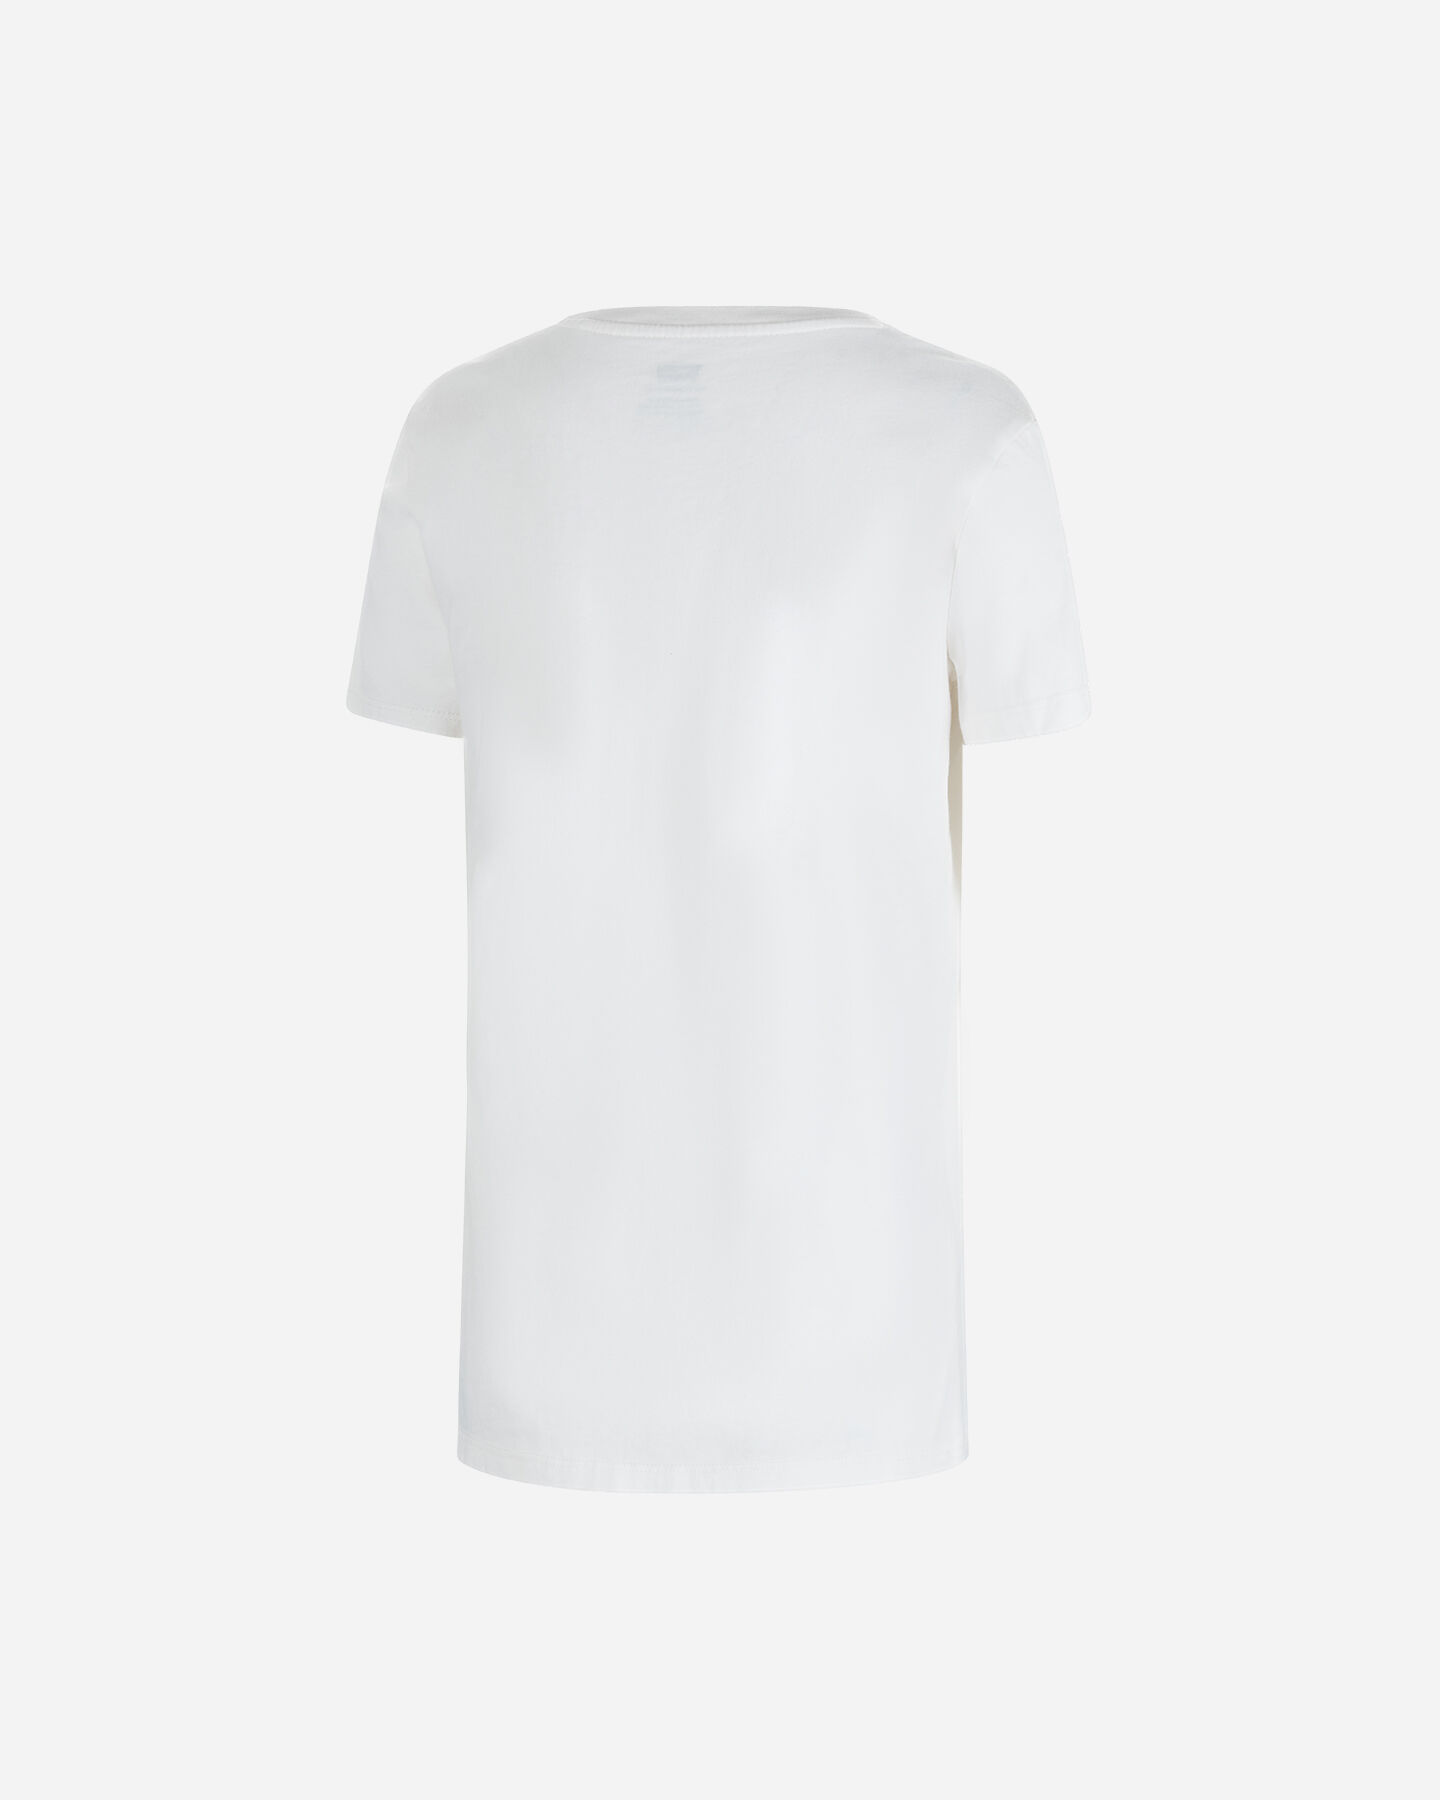  T-Shirt LEVI'S BLOCCHETTO LOGO W S4119860|2027|L scatto 1